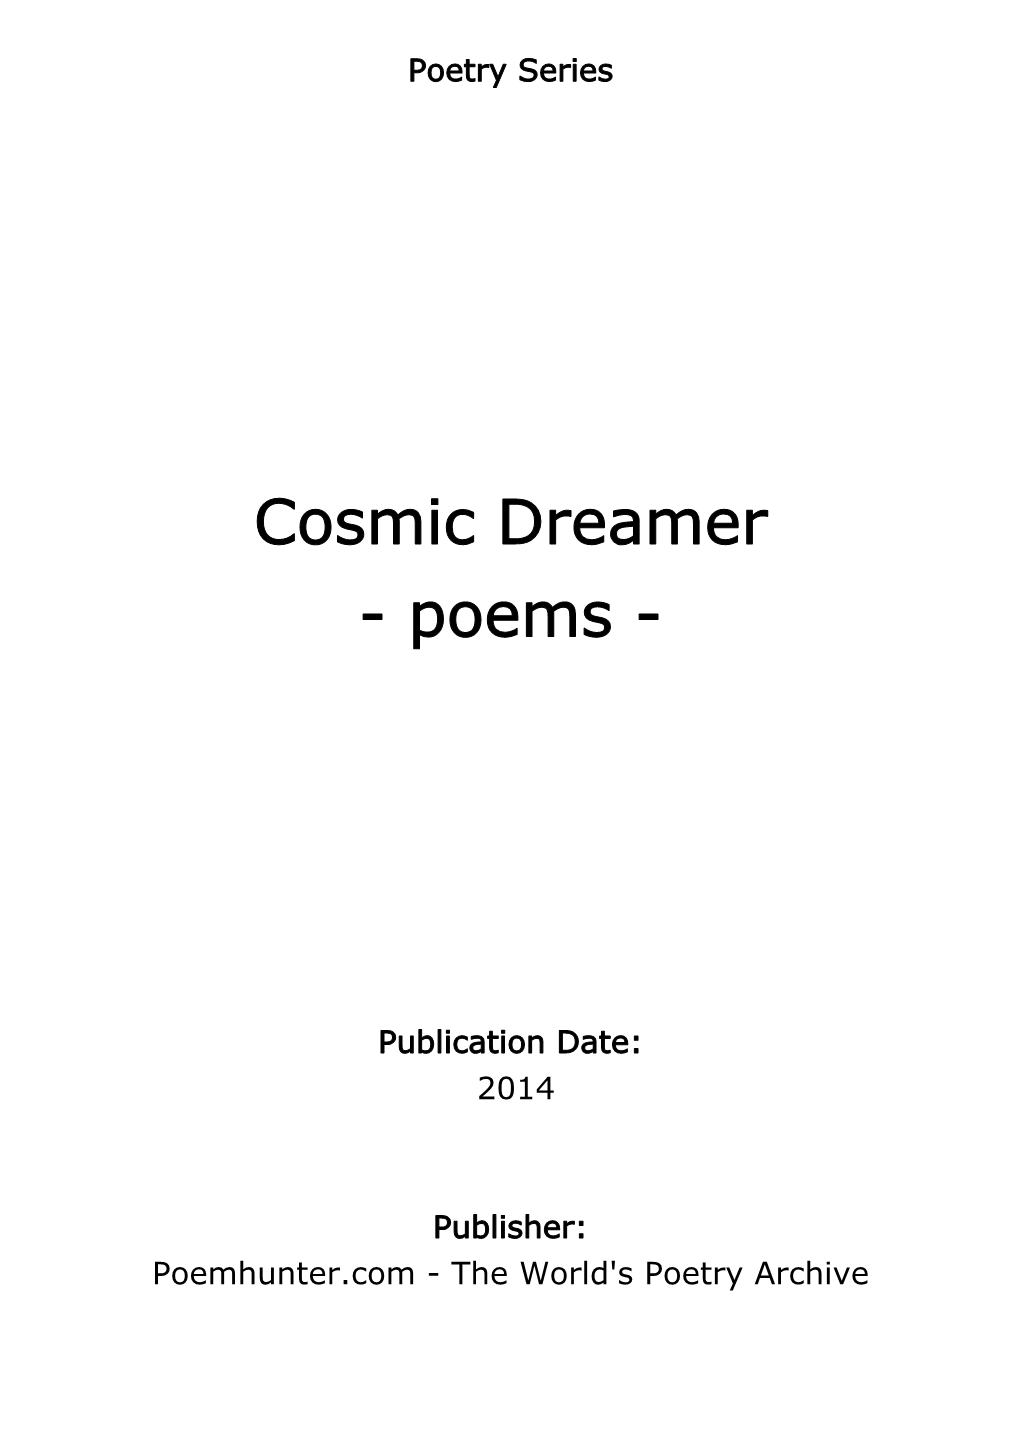 Cosmic Dreamer - Poems